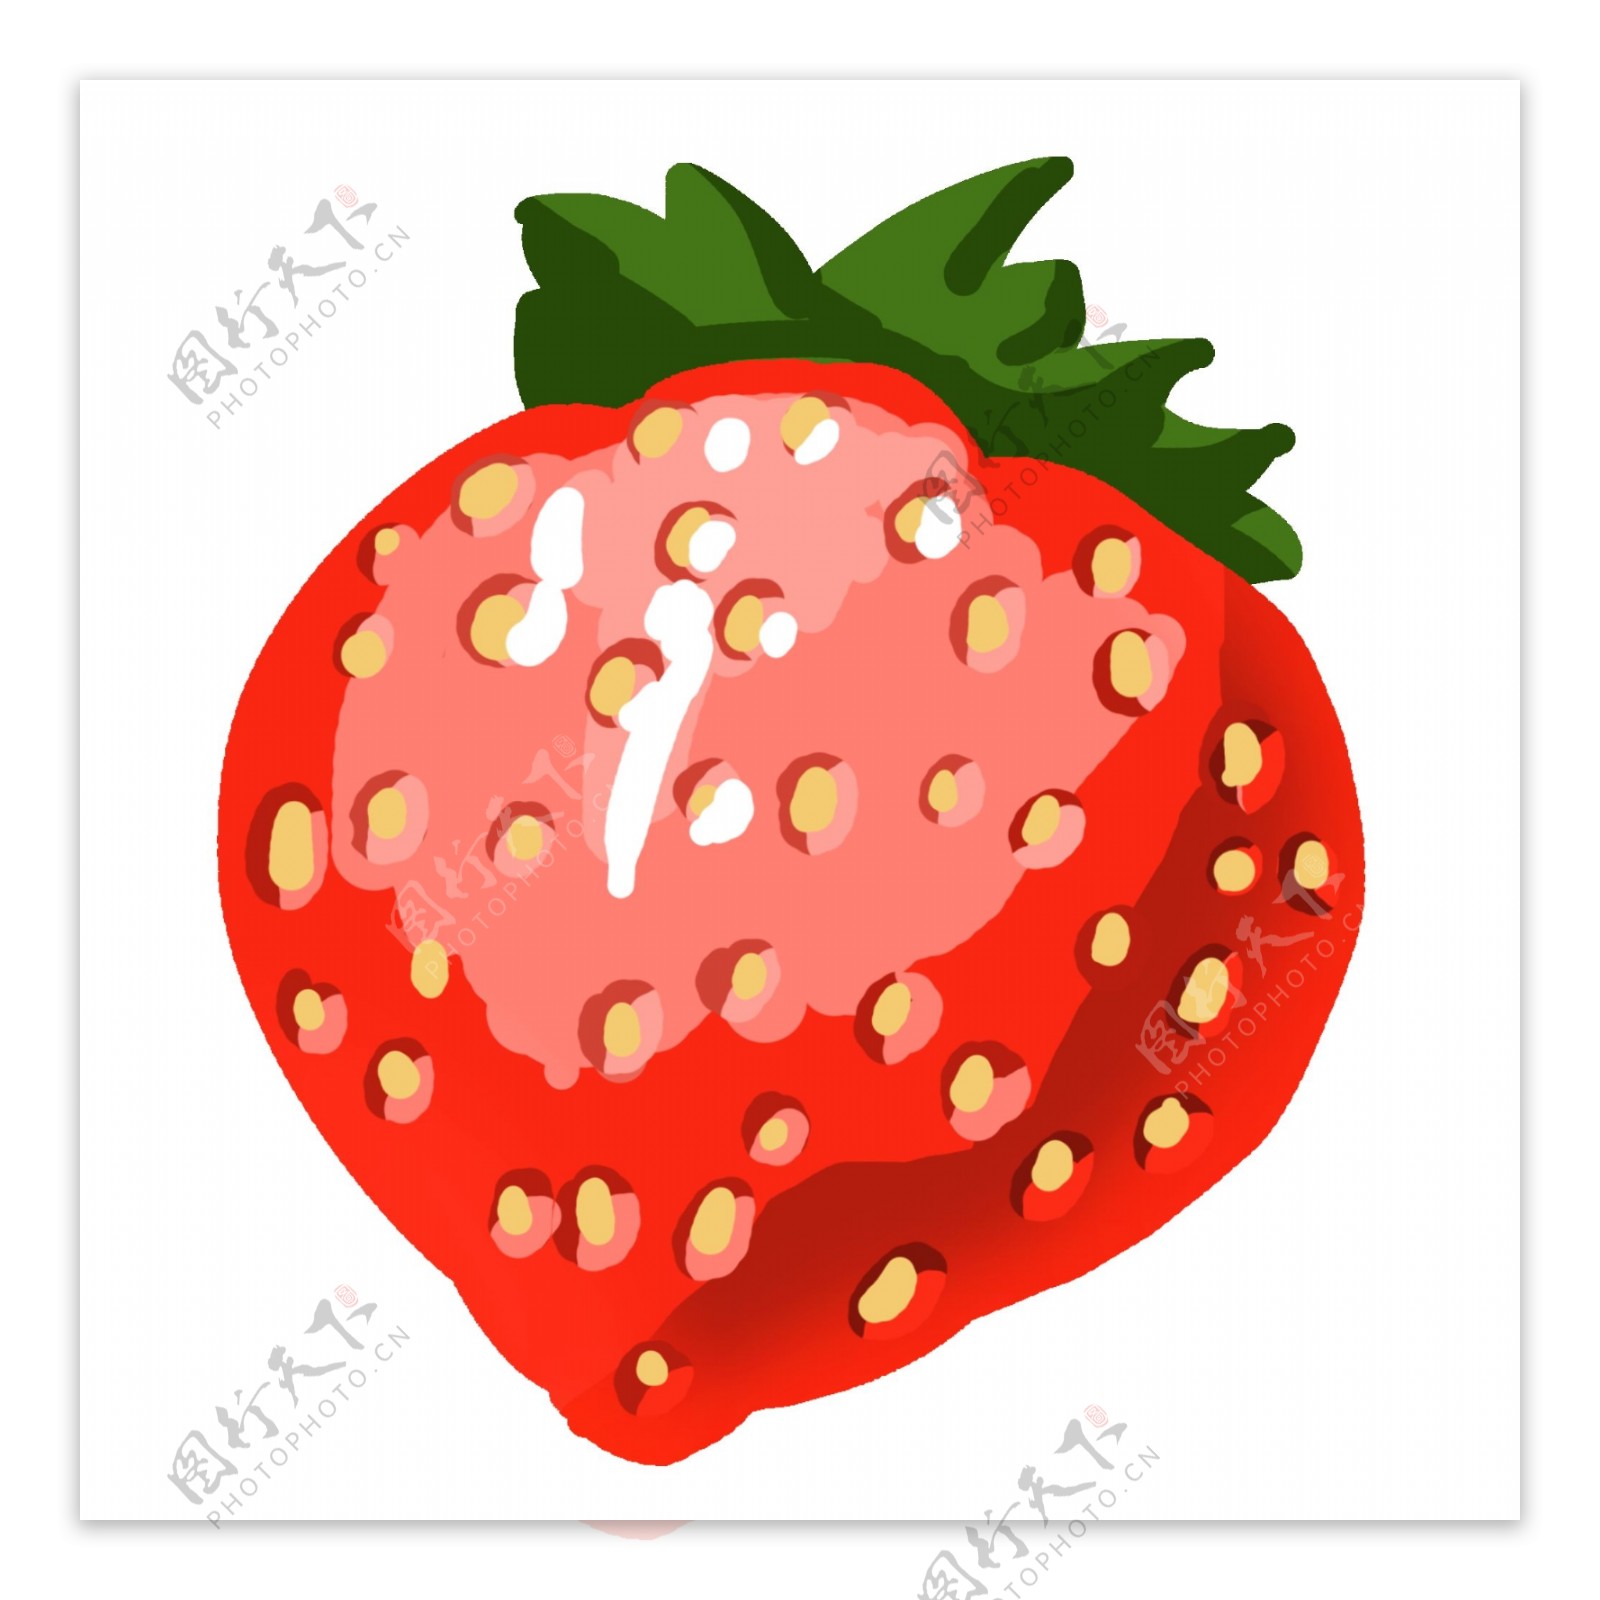 一颗红色的草莓插画